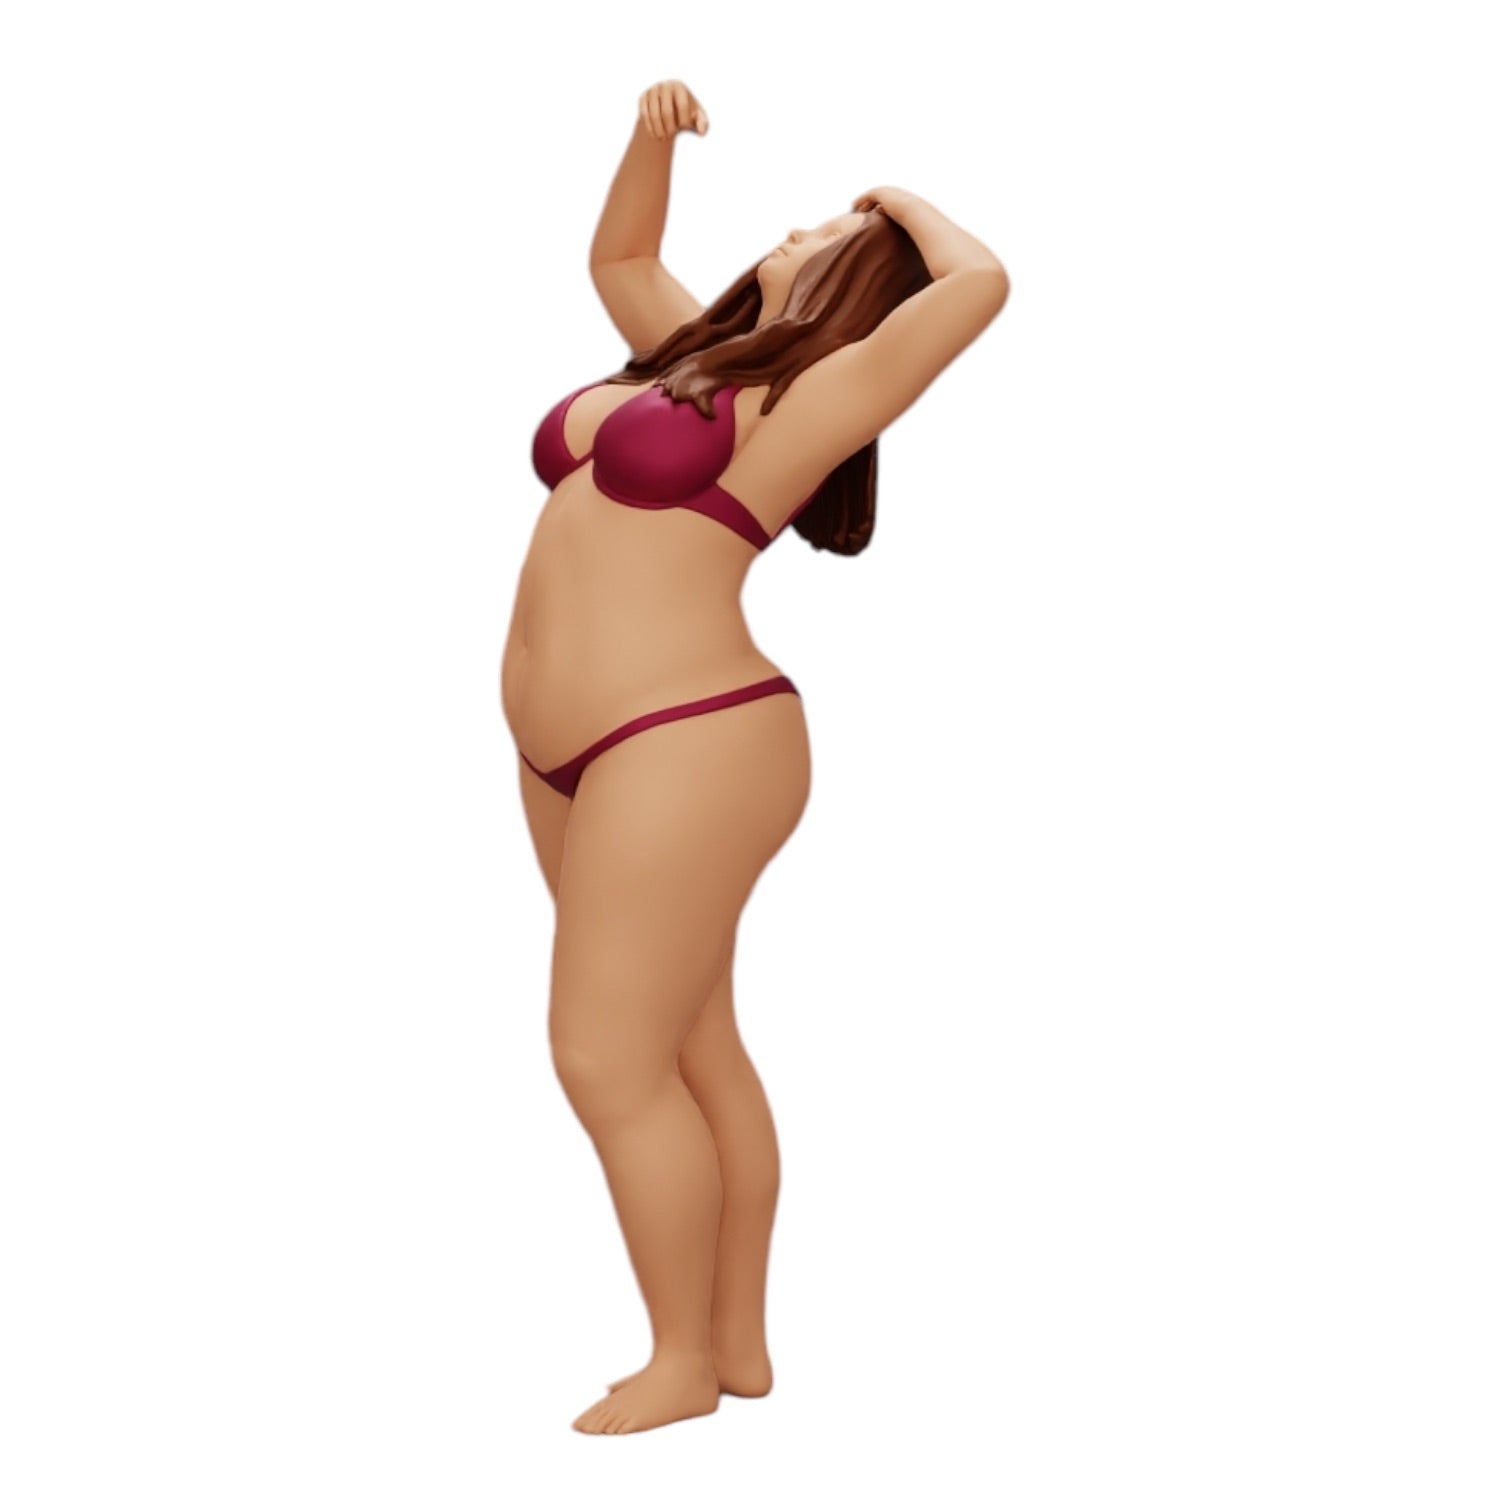 Diorama Modellbau Produktfoto 0: Mädchen im Bikini unter der Dusche (Ref Nr. A8)